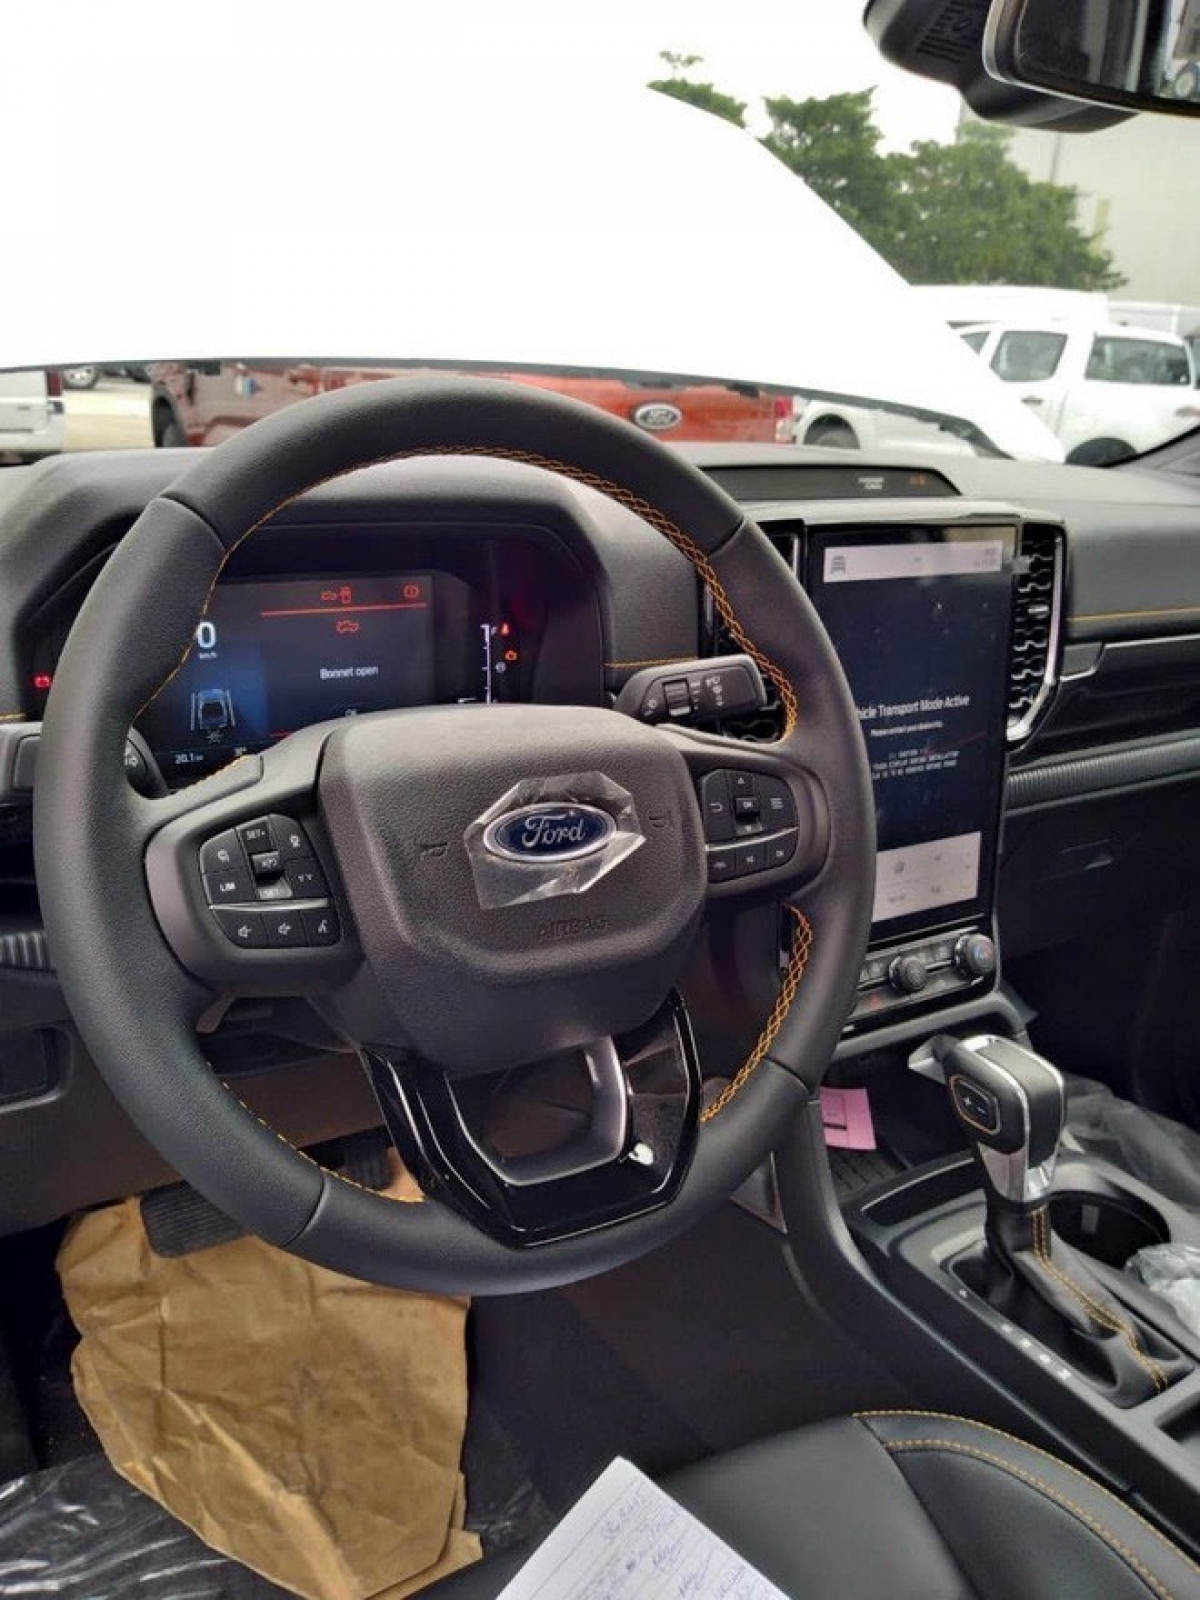 Ford Ranger bị chênh giá tại đại lý, cao nhất hơn 90 triệu đồng - Ảnh 6.